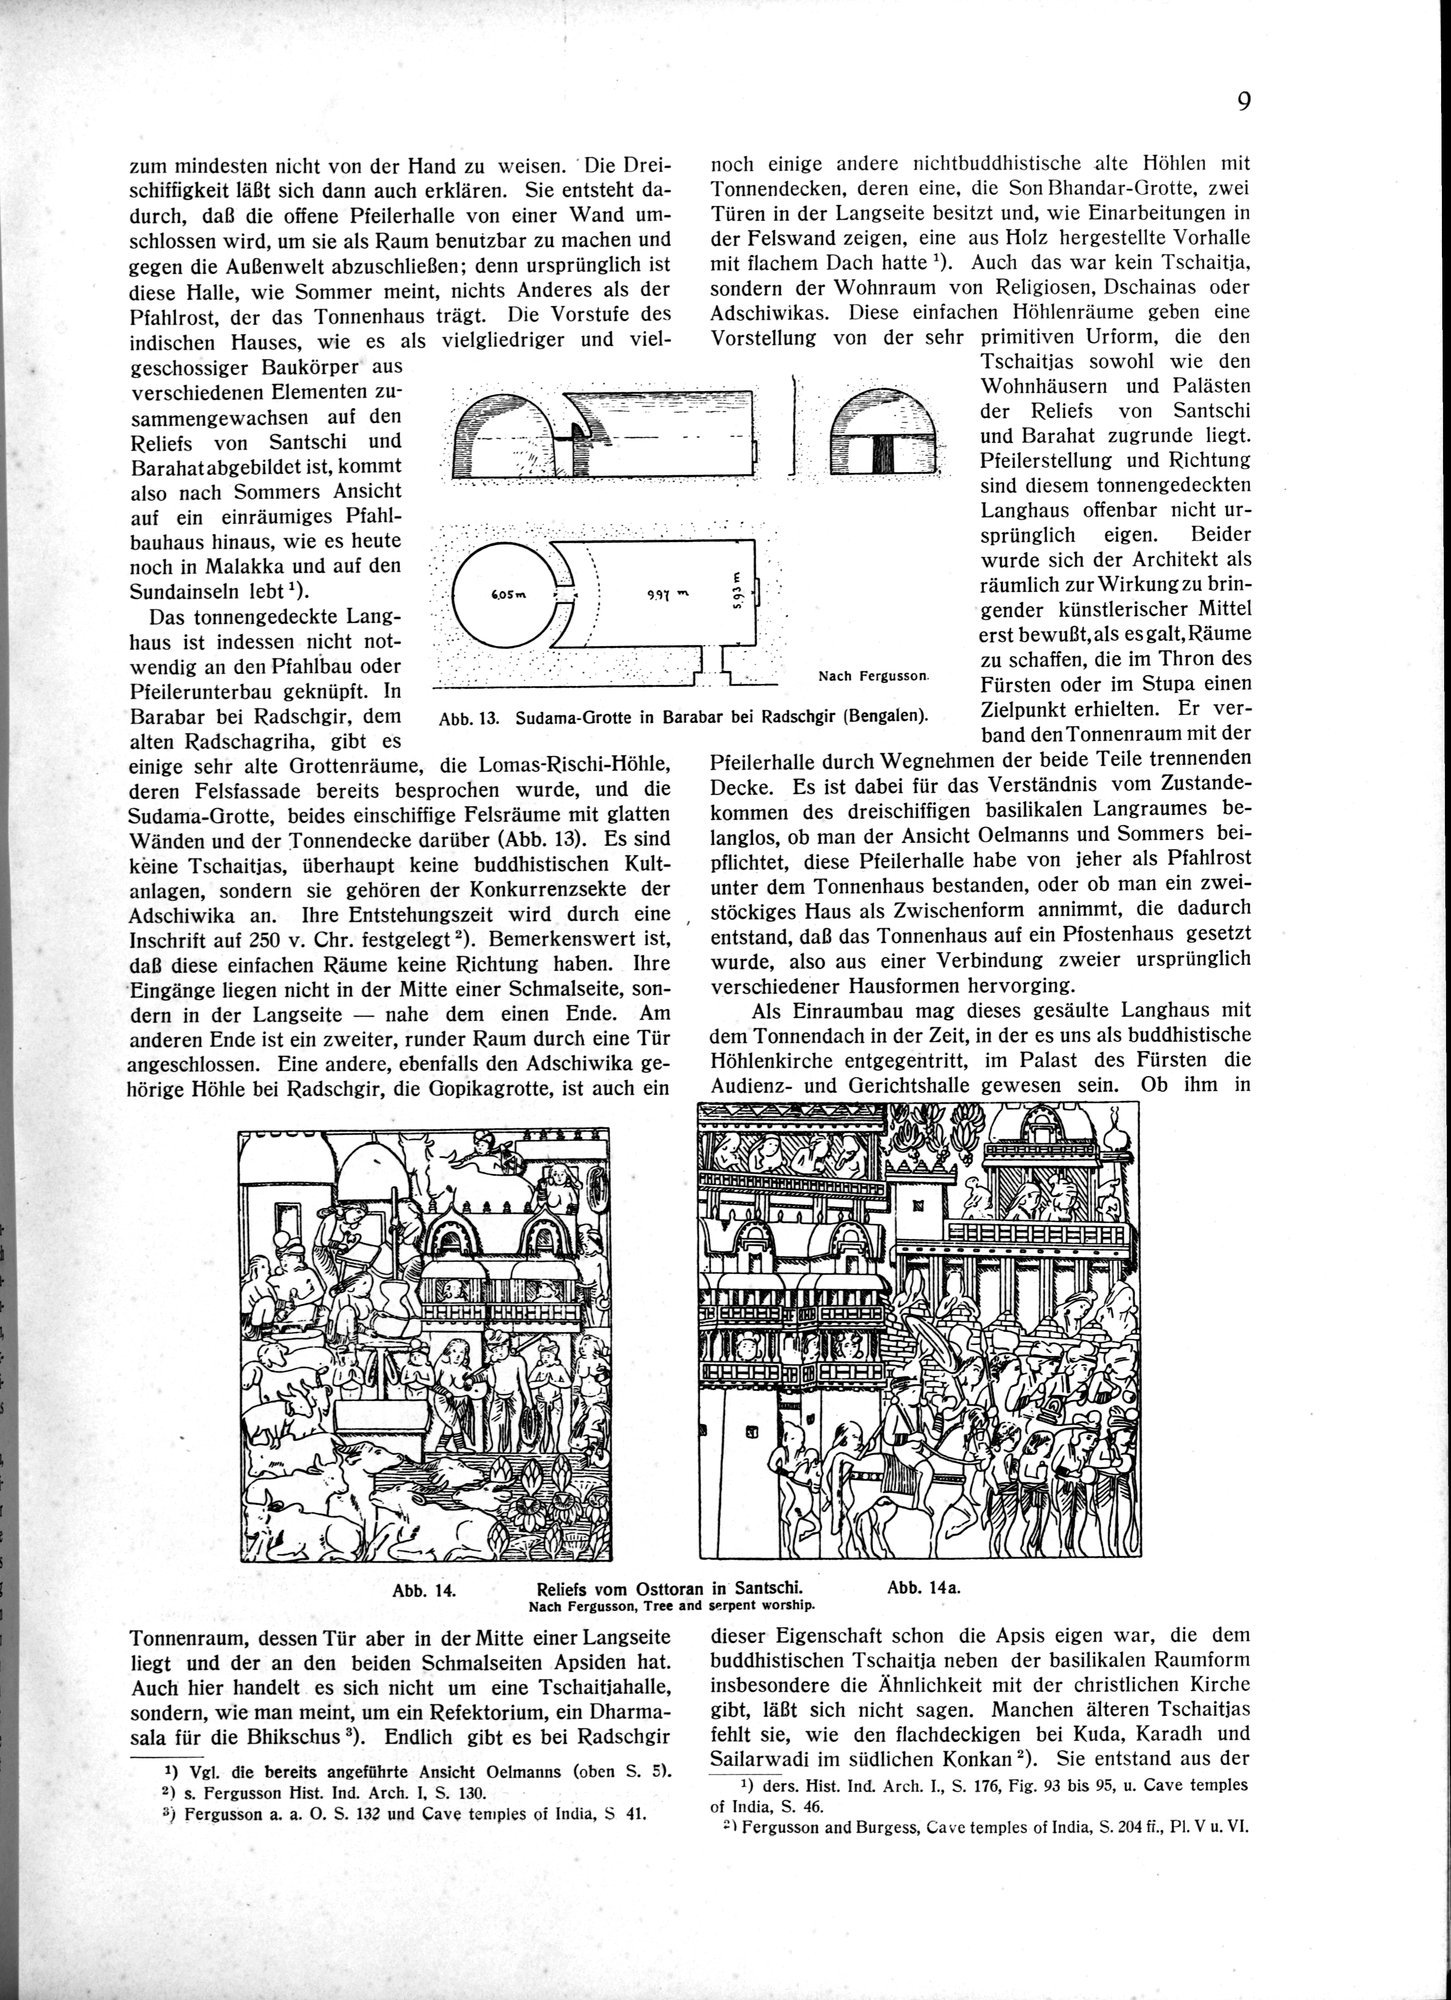 Indische Palaste und Wohnhauser : vol.1 / Page 19 (Grayscale High Resolution Image)